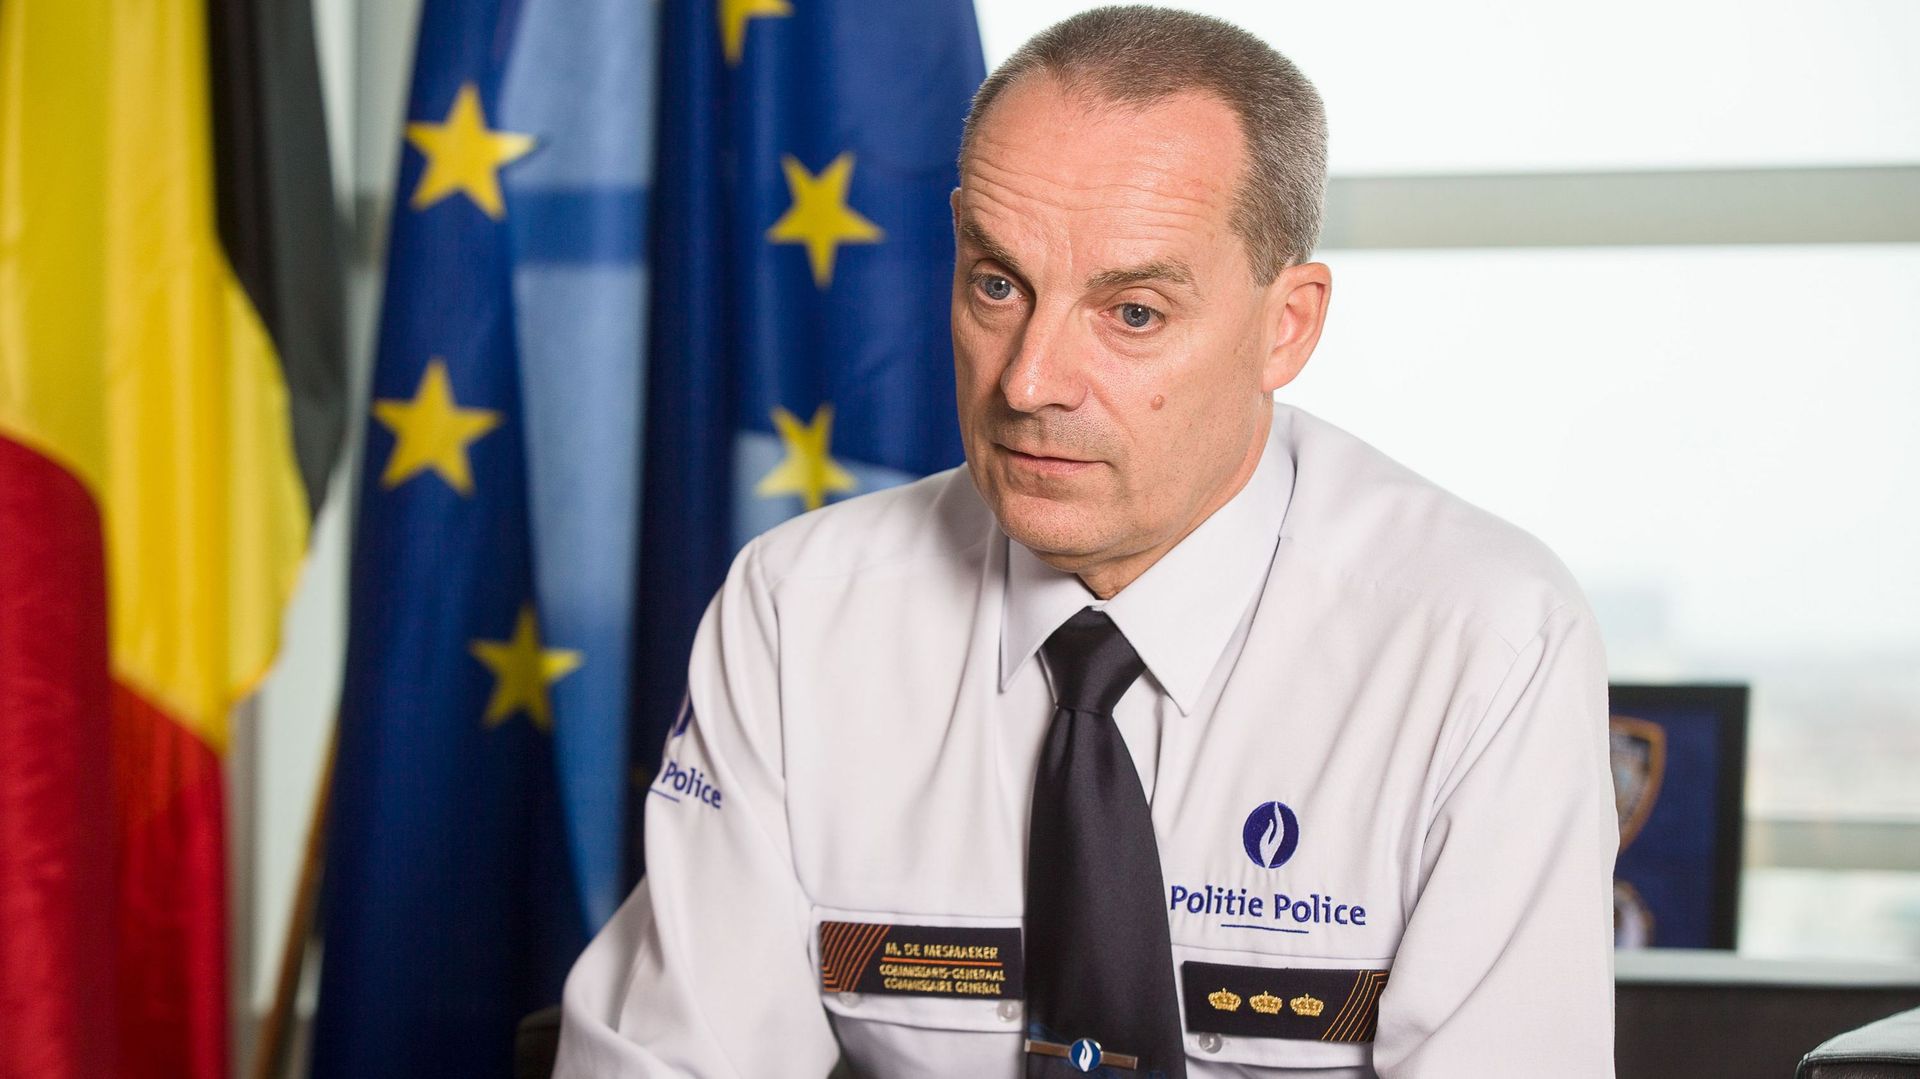 Affaire Chovanec : L'actuel commissaire général de la police fédérale mis au courant en 2018